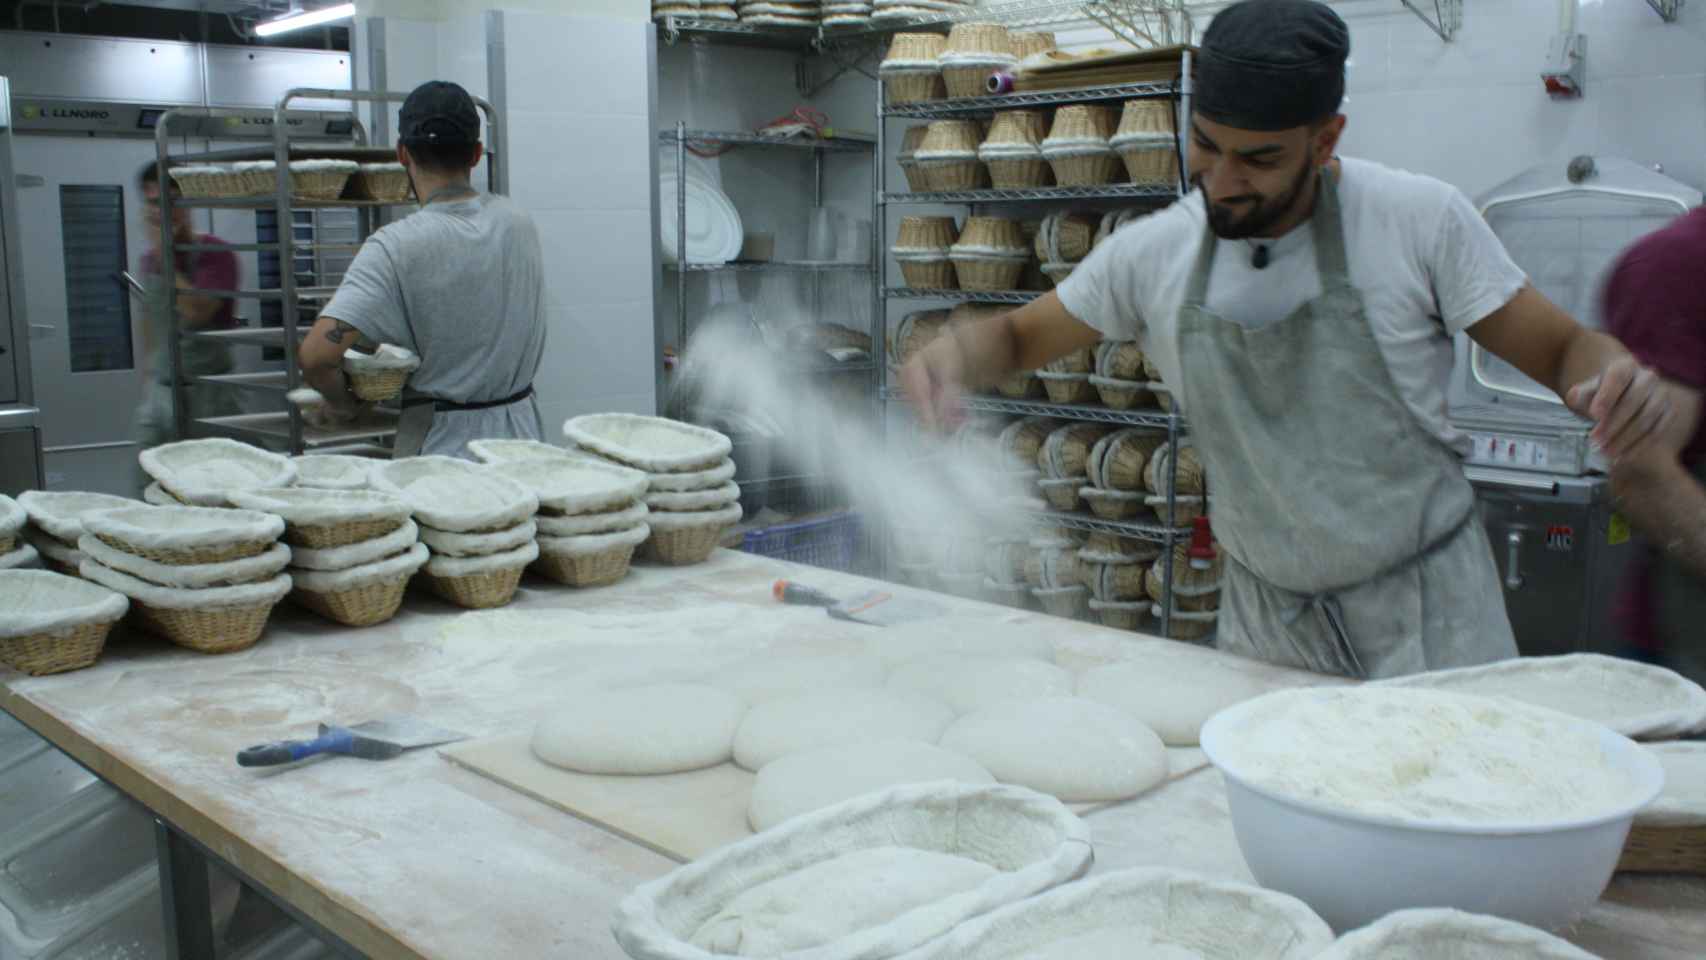 Panadero Martín esparciendo harina sobre la masa del pan en la zona de amasado.